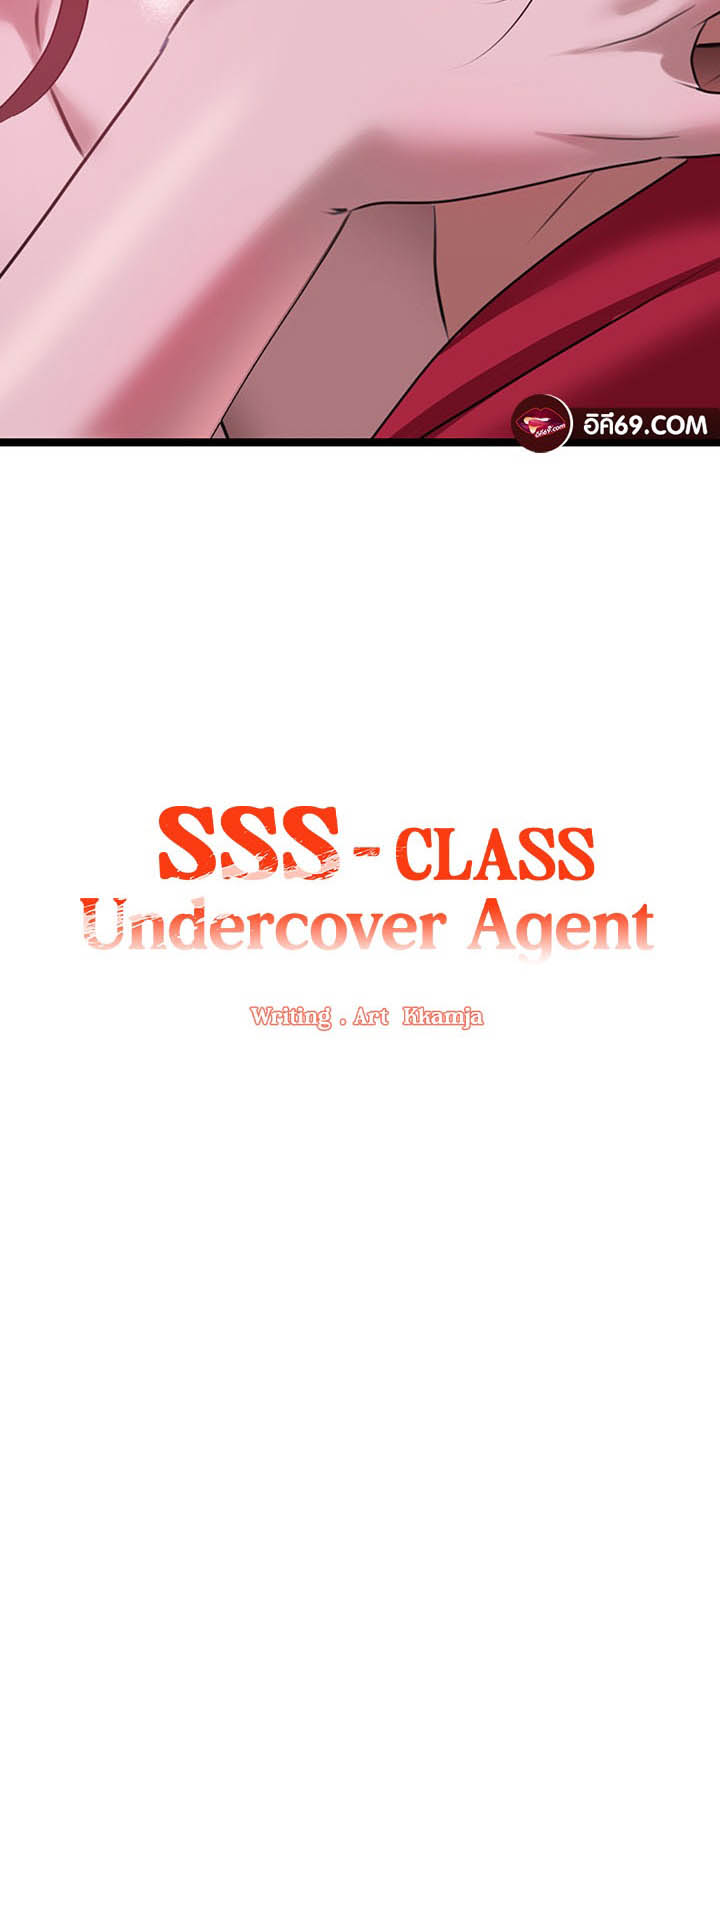 อ่านโดจิน เรื่อง SSS Class Undercover Agent 16 03